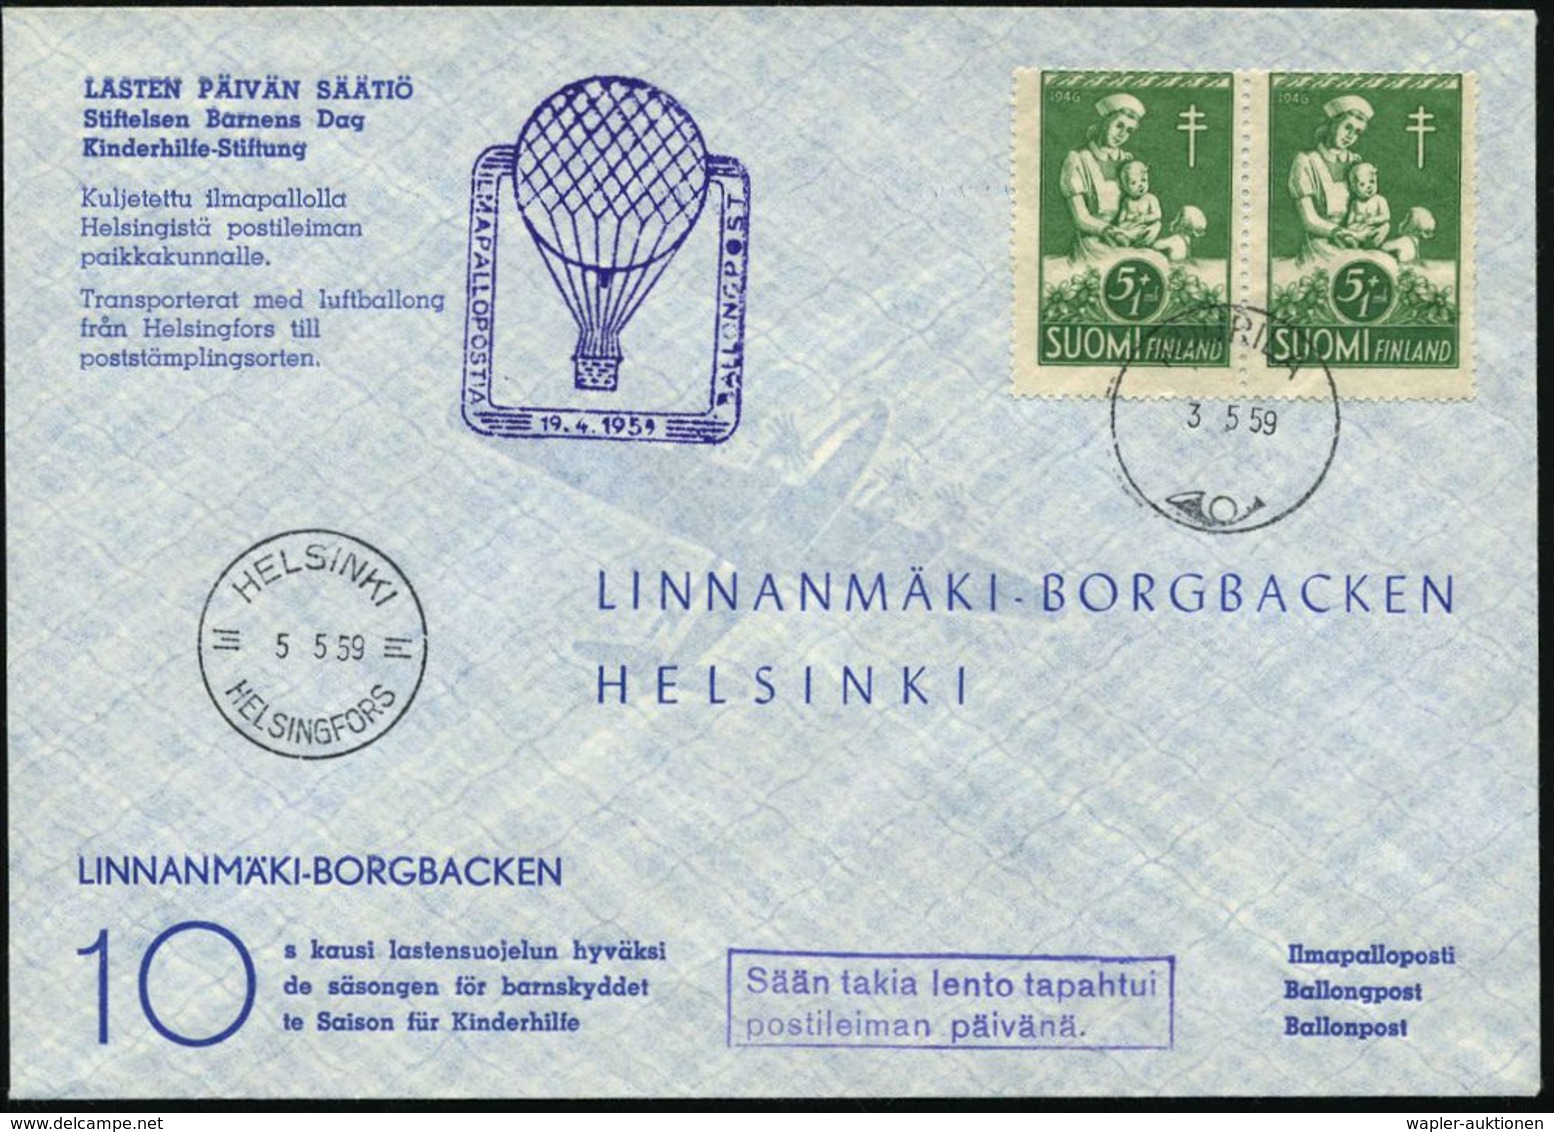 TUBERKULOSE / TBC-VORSORGE : FINNLAND 1959 (3.5.) 5 Mk + 1Mk. Anti-Tuberkulose, Reine MeF: Paar = Kinder-Krankenschester - Krankheiten